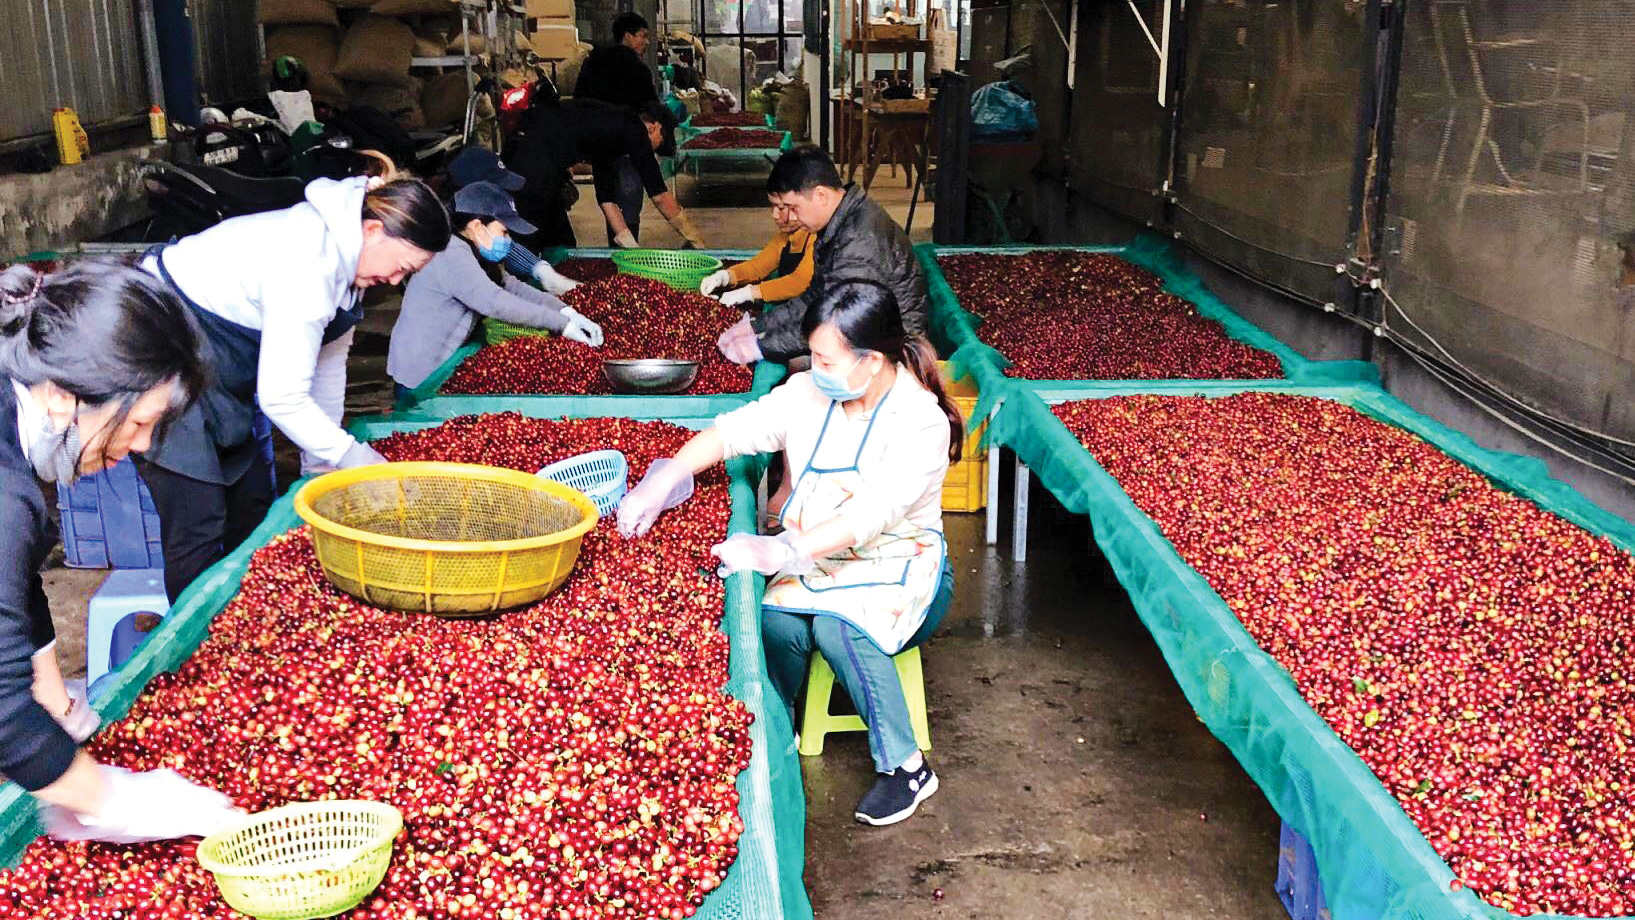 Giá cà phê cao kỷ lục, nông dân không còn hàng để bán